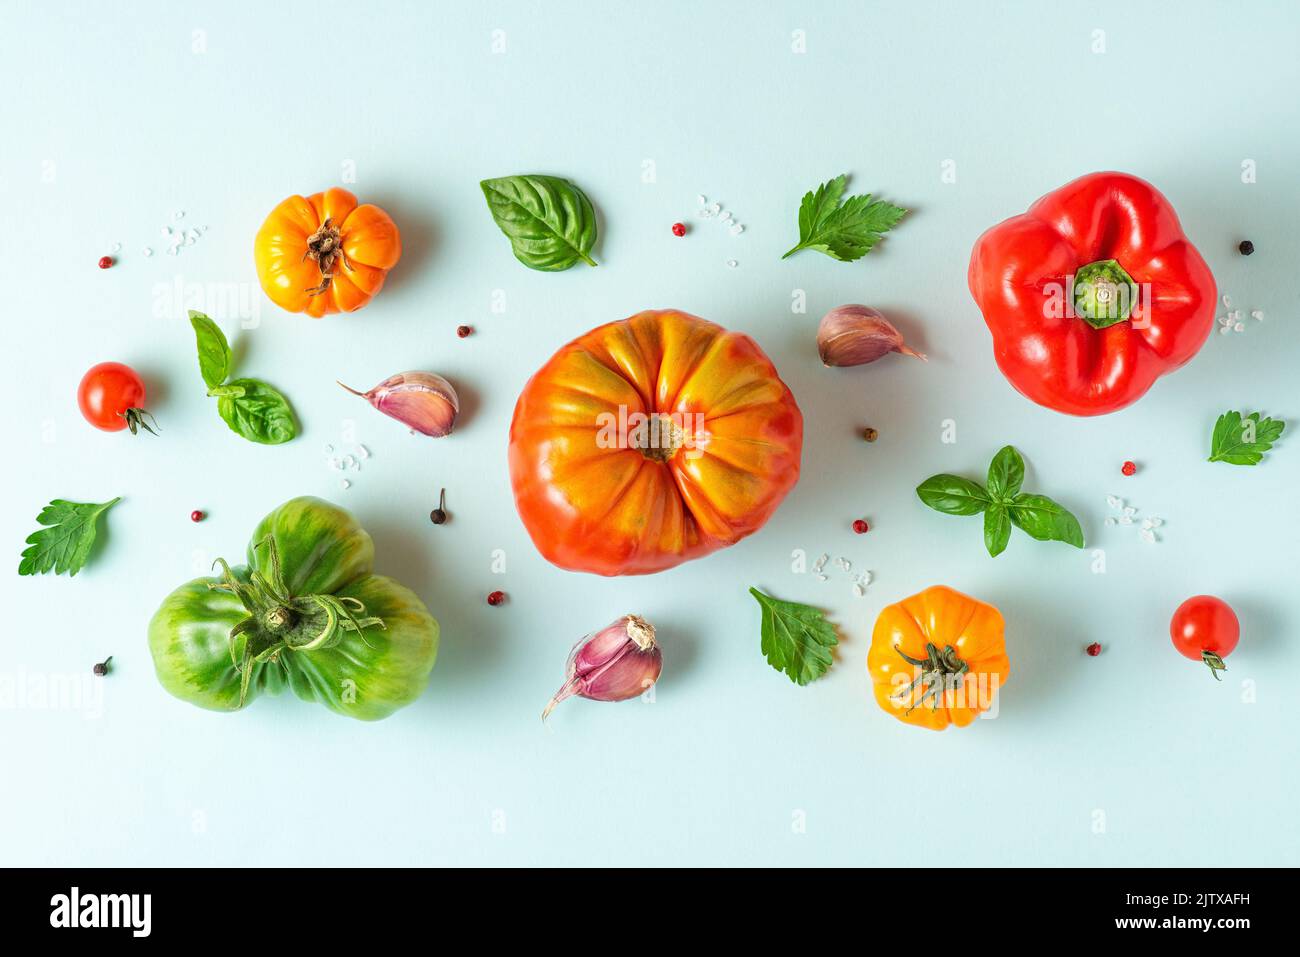 Composition des aliments. Tomates, basilic, ail et poivre sur fond bleu pastel. Pose à plat. Vue de dessus. Motif de légumes Banque D'Images